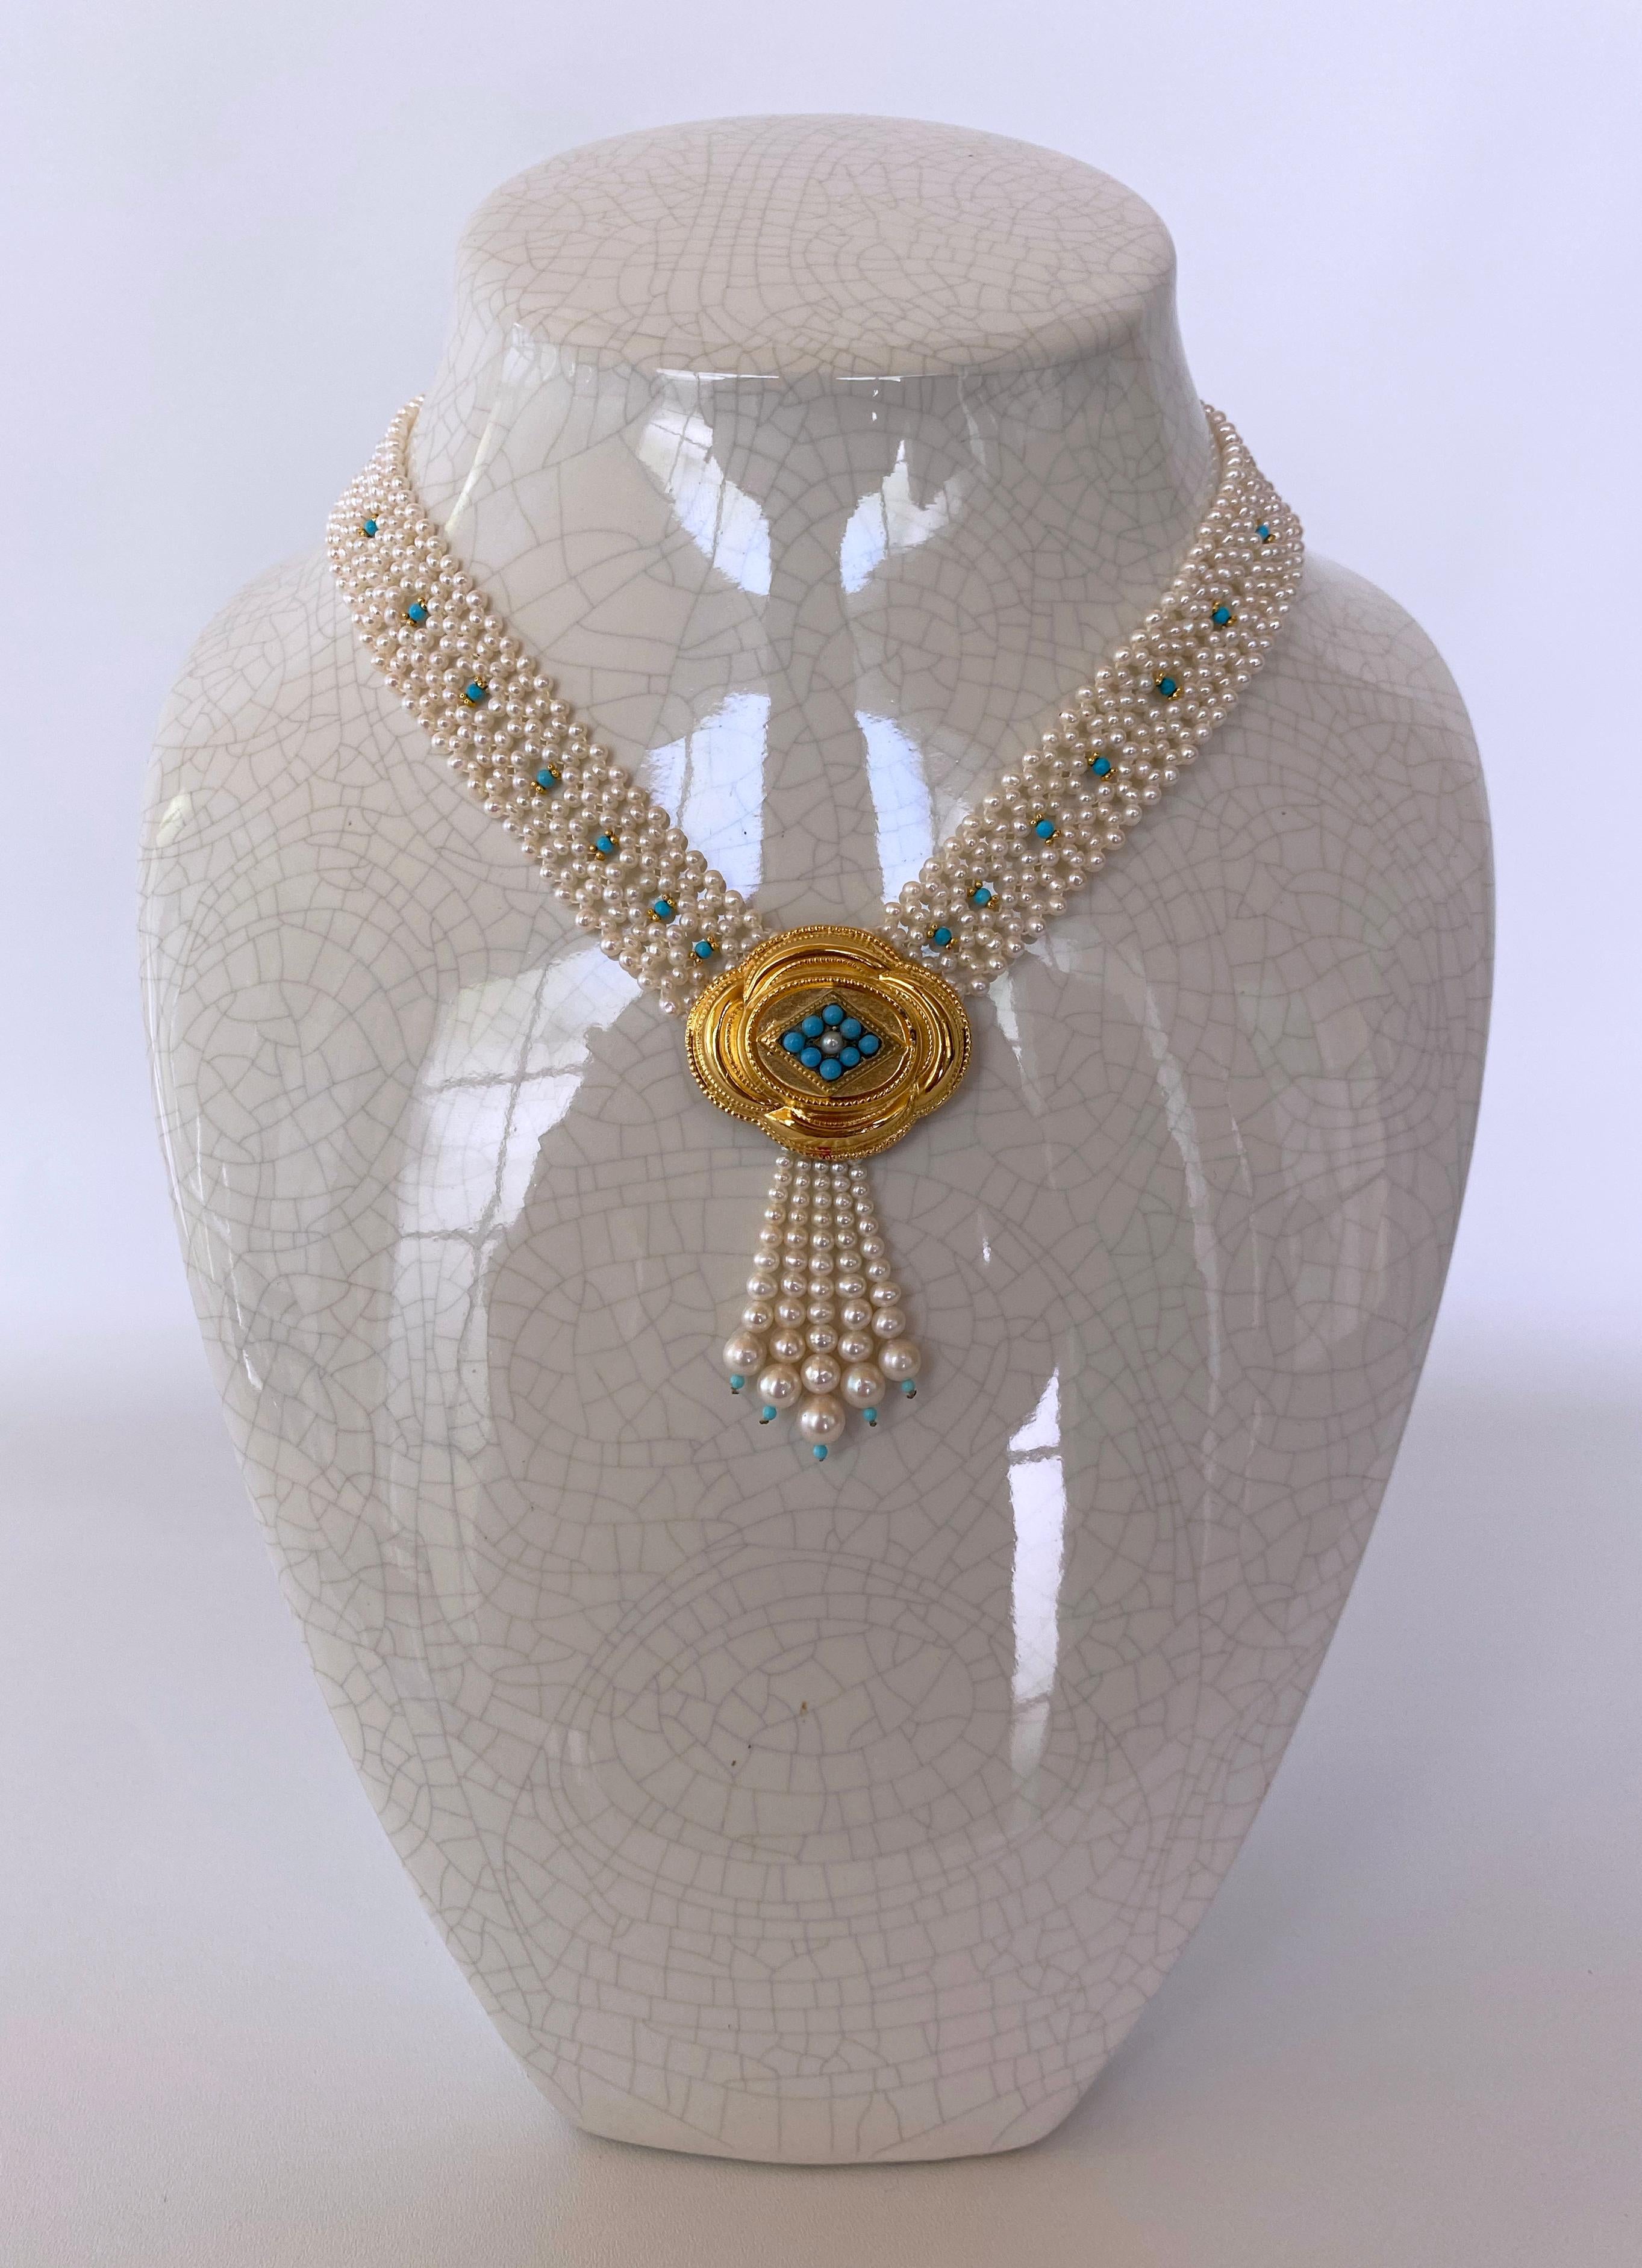 Pièce magnifique fabriquée à Los Angeles par Marina J. Ce ravissant collier d'inspiration victorienne est tissé à la main en une dentelle serrée, avec des perles blanches de culture affichant une brillance et une irisation magnifiques. De petites